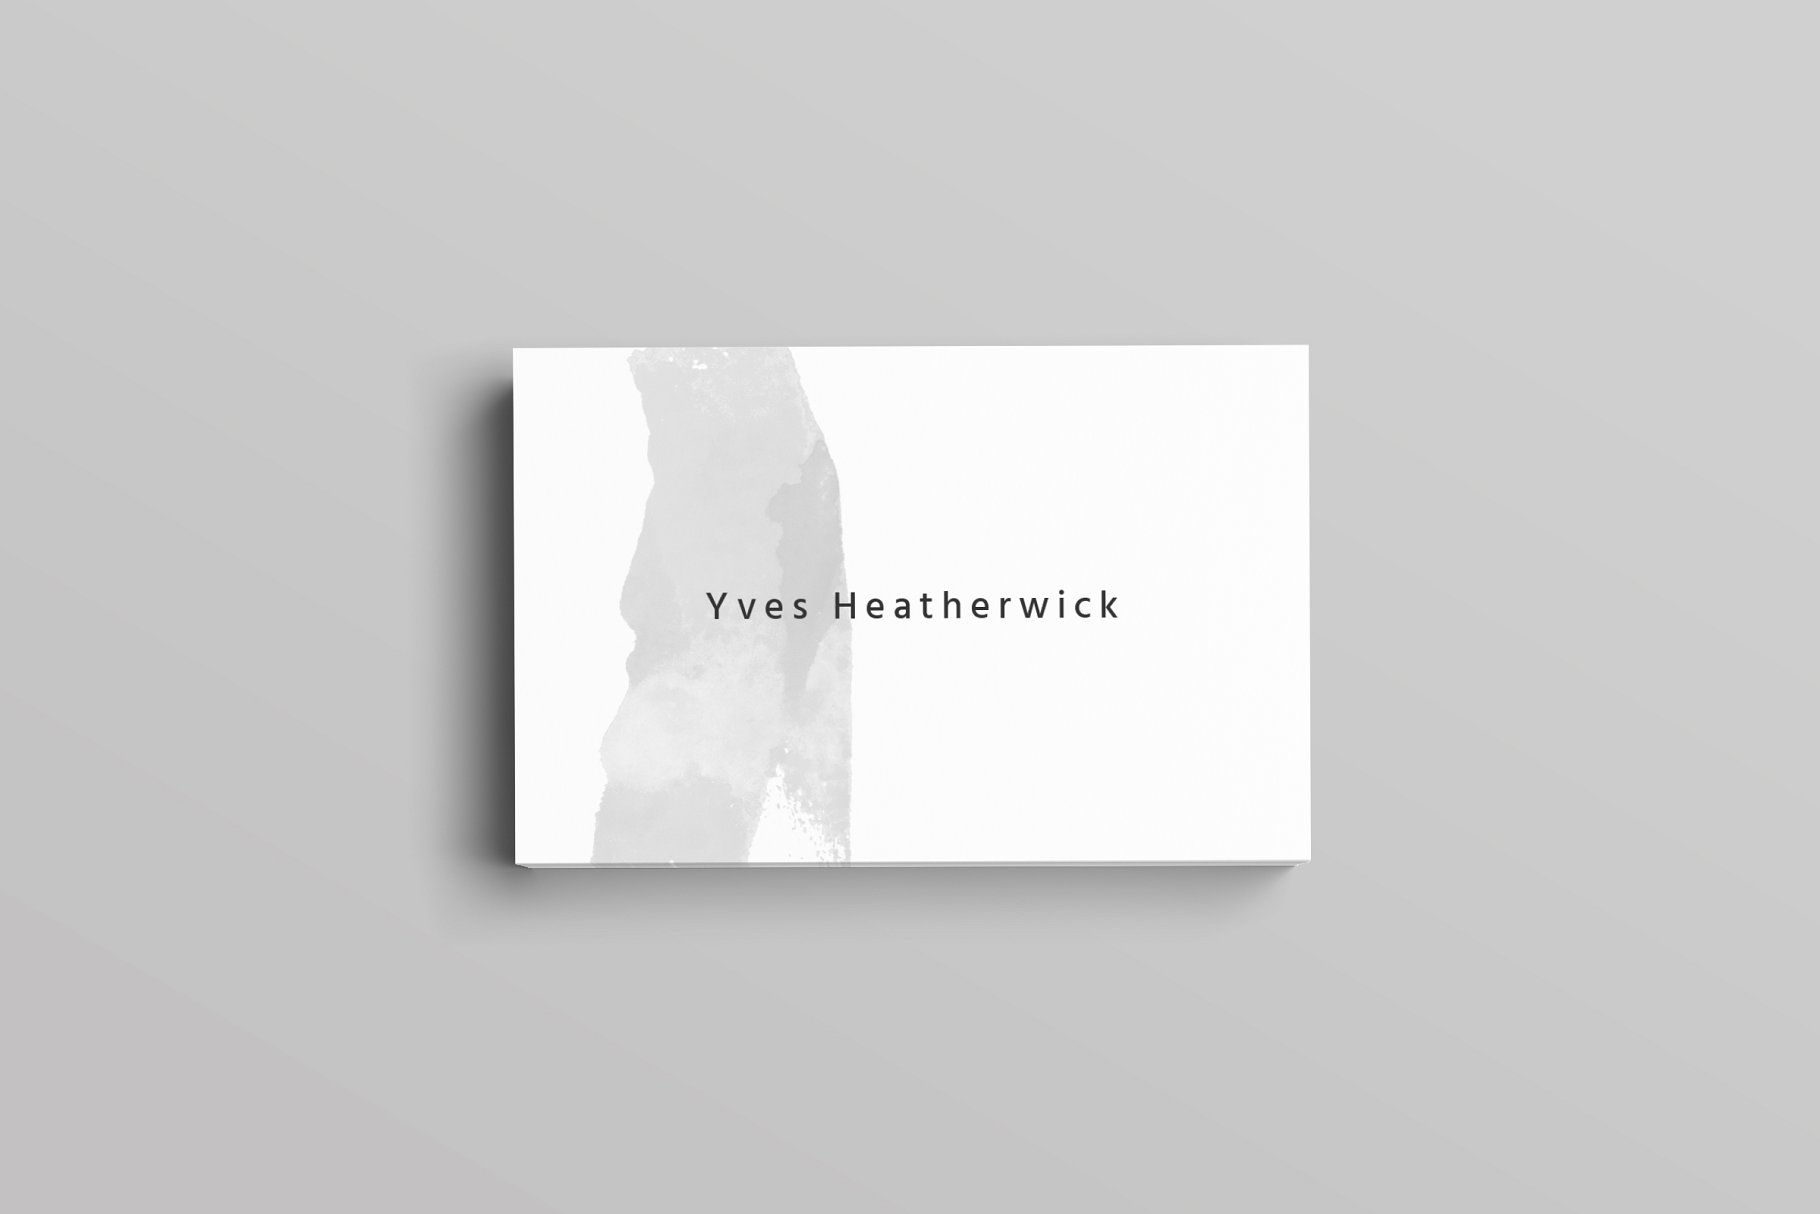 极简主义设计风格企业名片设计模板 Heatherwick Business Card Template插图(2)